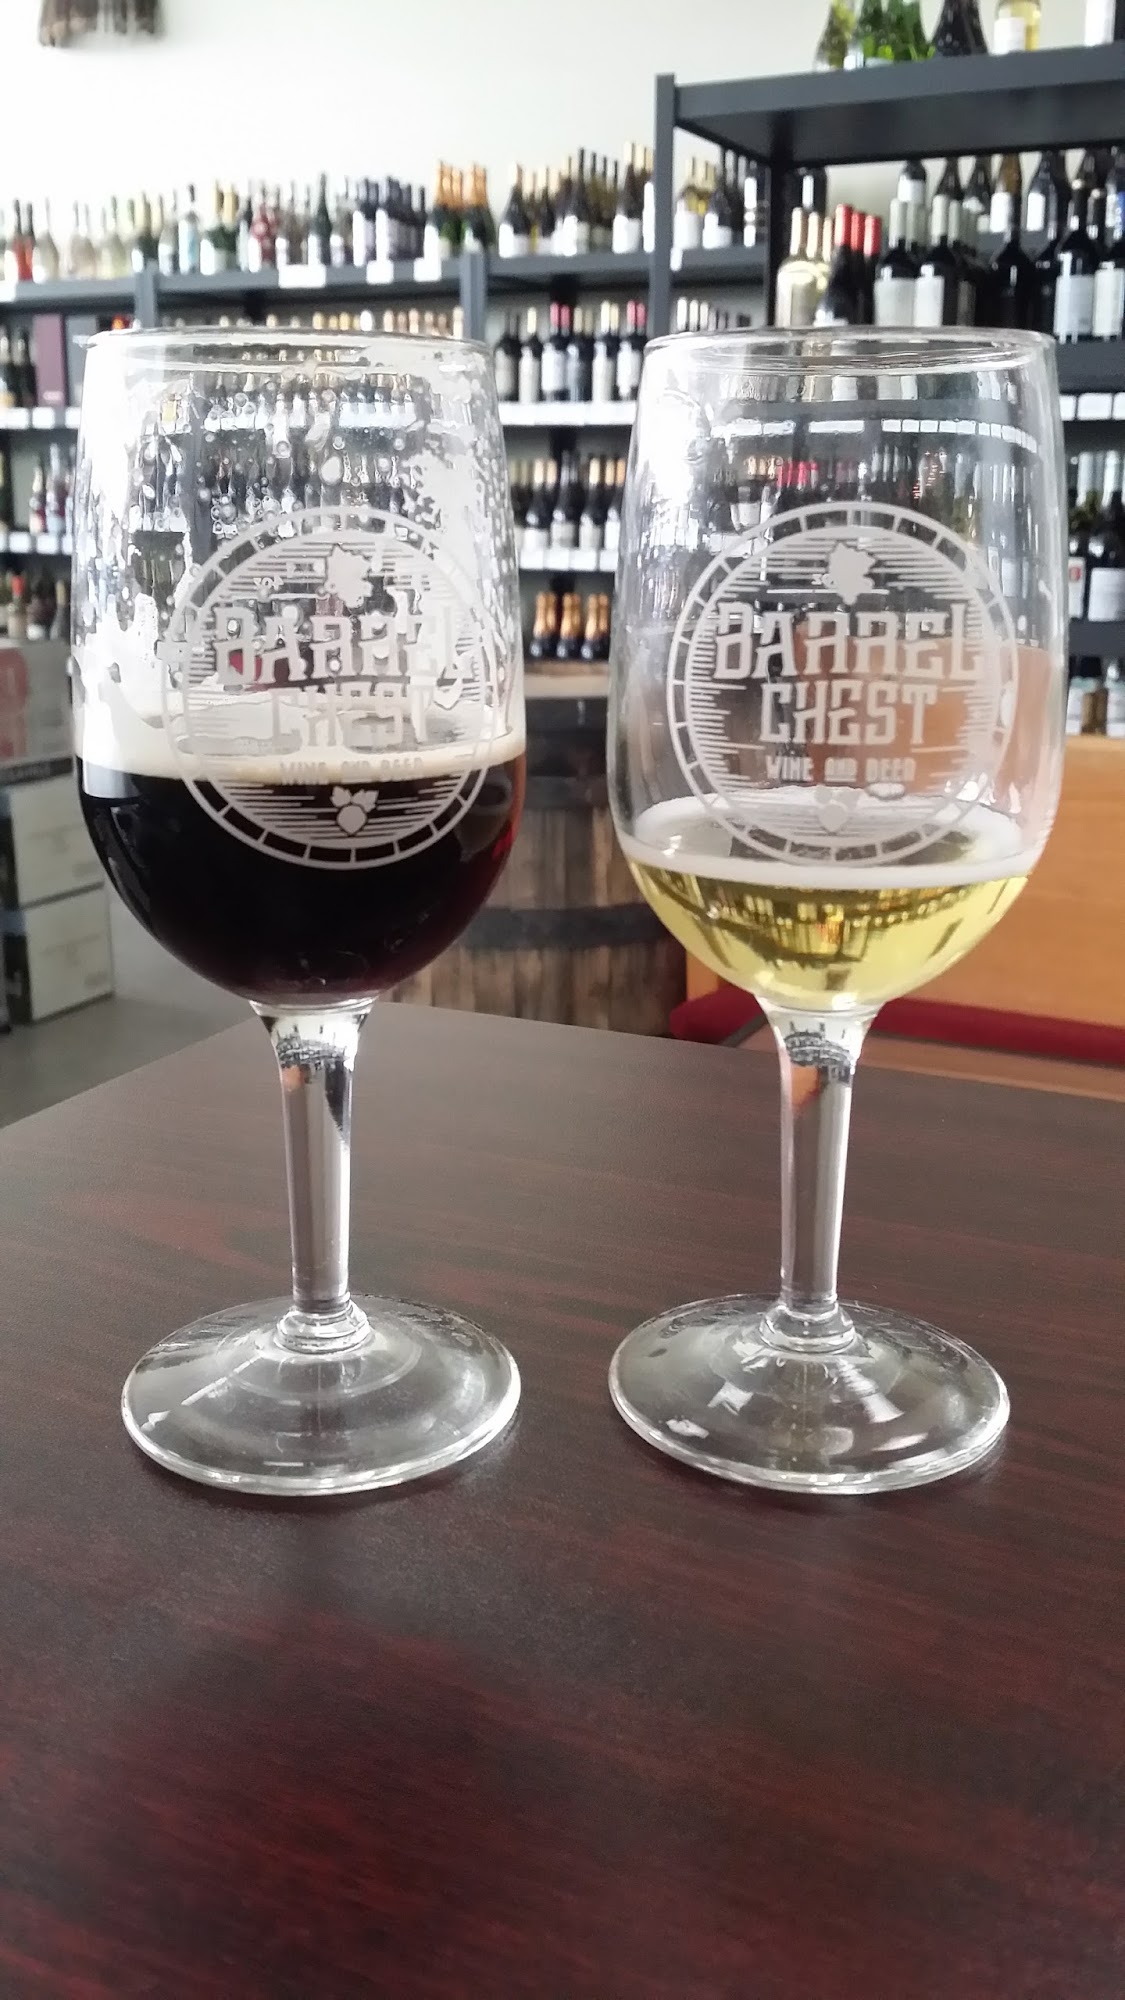 Barrel Chest Wine & Beer